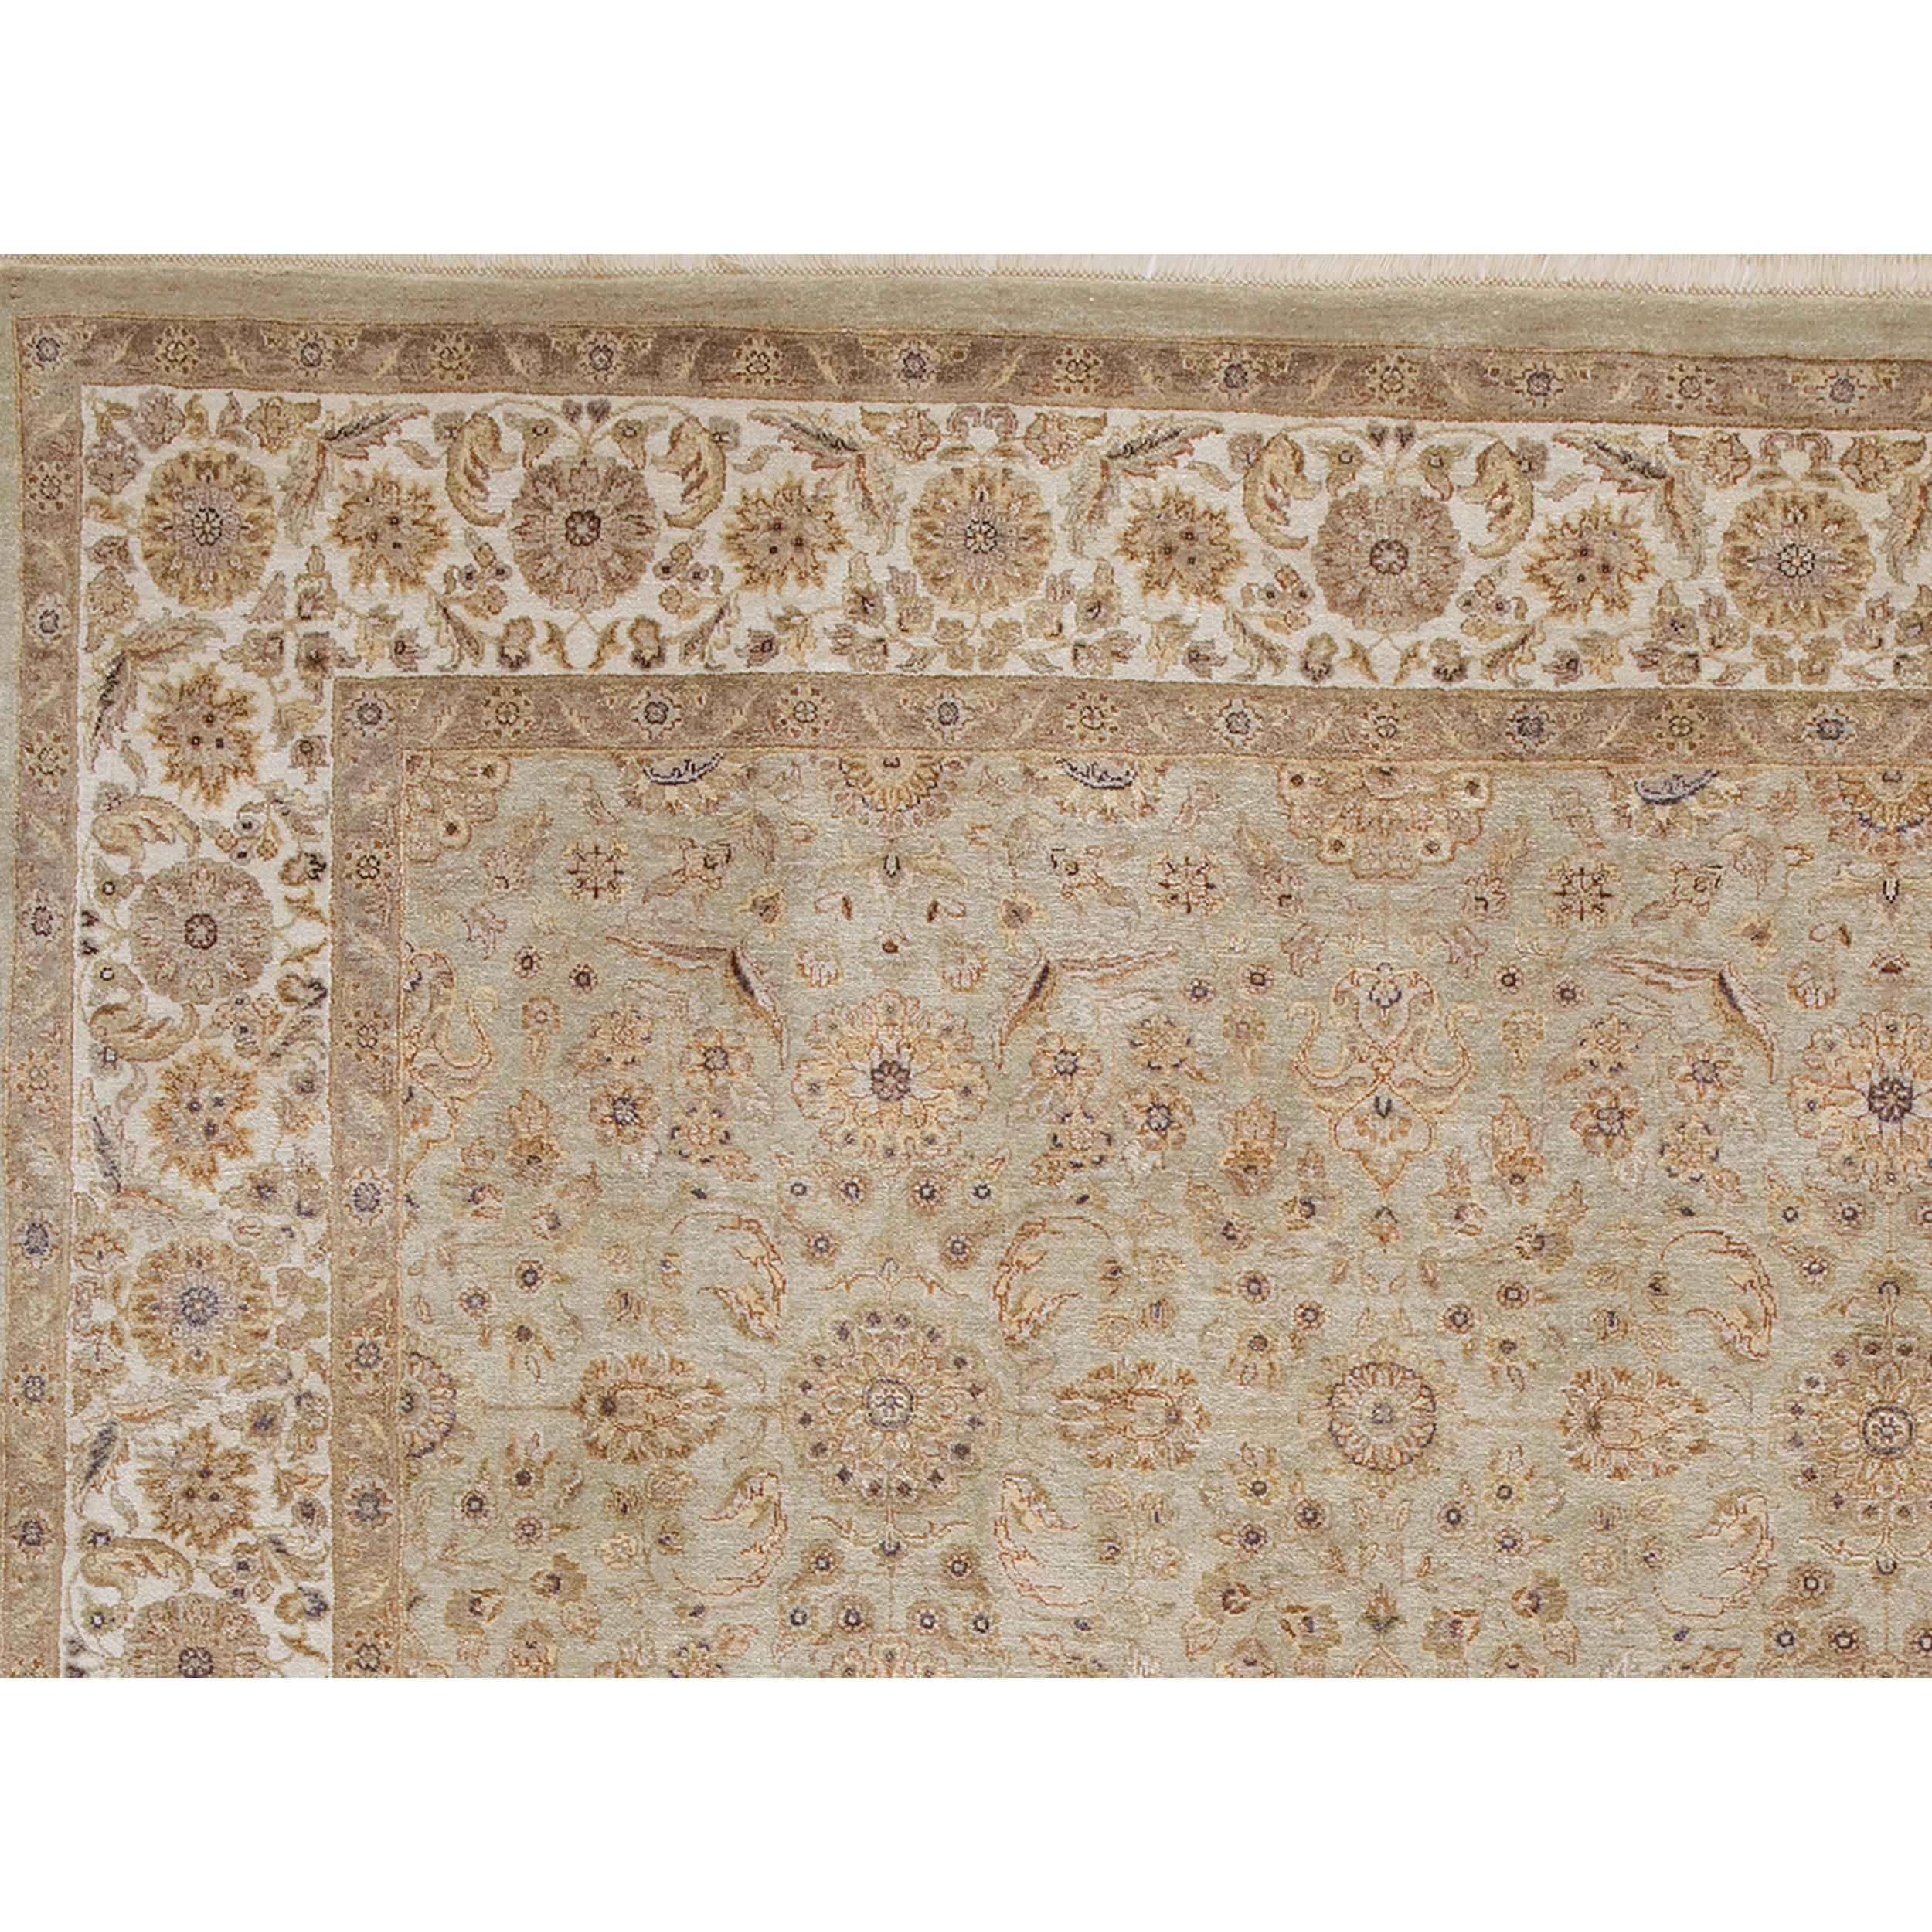 Dieser exquisite handgewebte Teppich entstammt dem künstlerischen Erbe Indiens, wo geschickte Weber ihr Handwerk perfektioniert haben. Sorgfältig aus den luxuriösesten Seiden gefertigt, ist dieser Teppich das Ergebnis einer unvergleichlichen